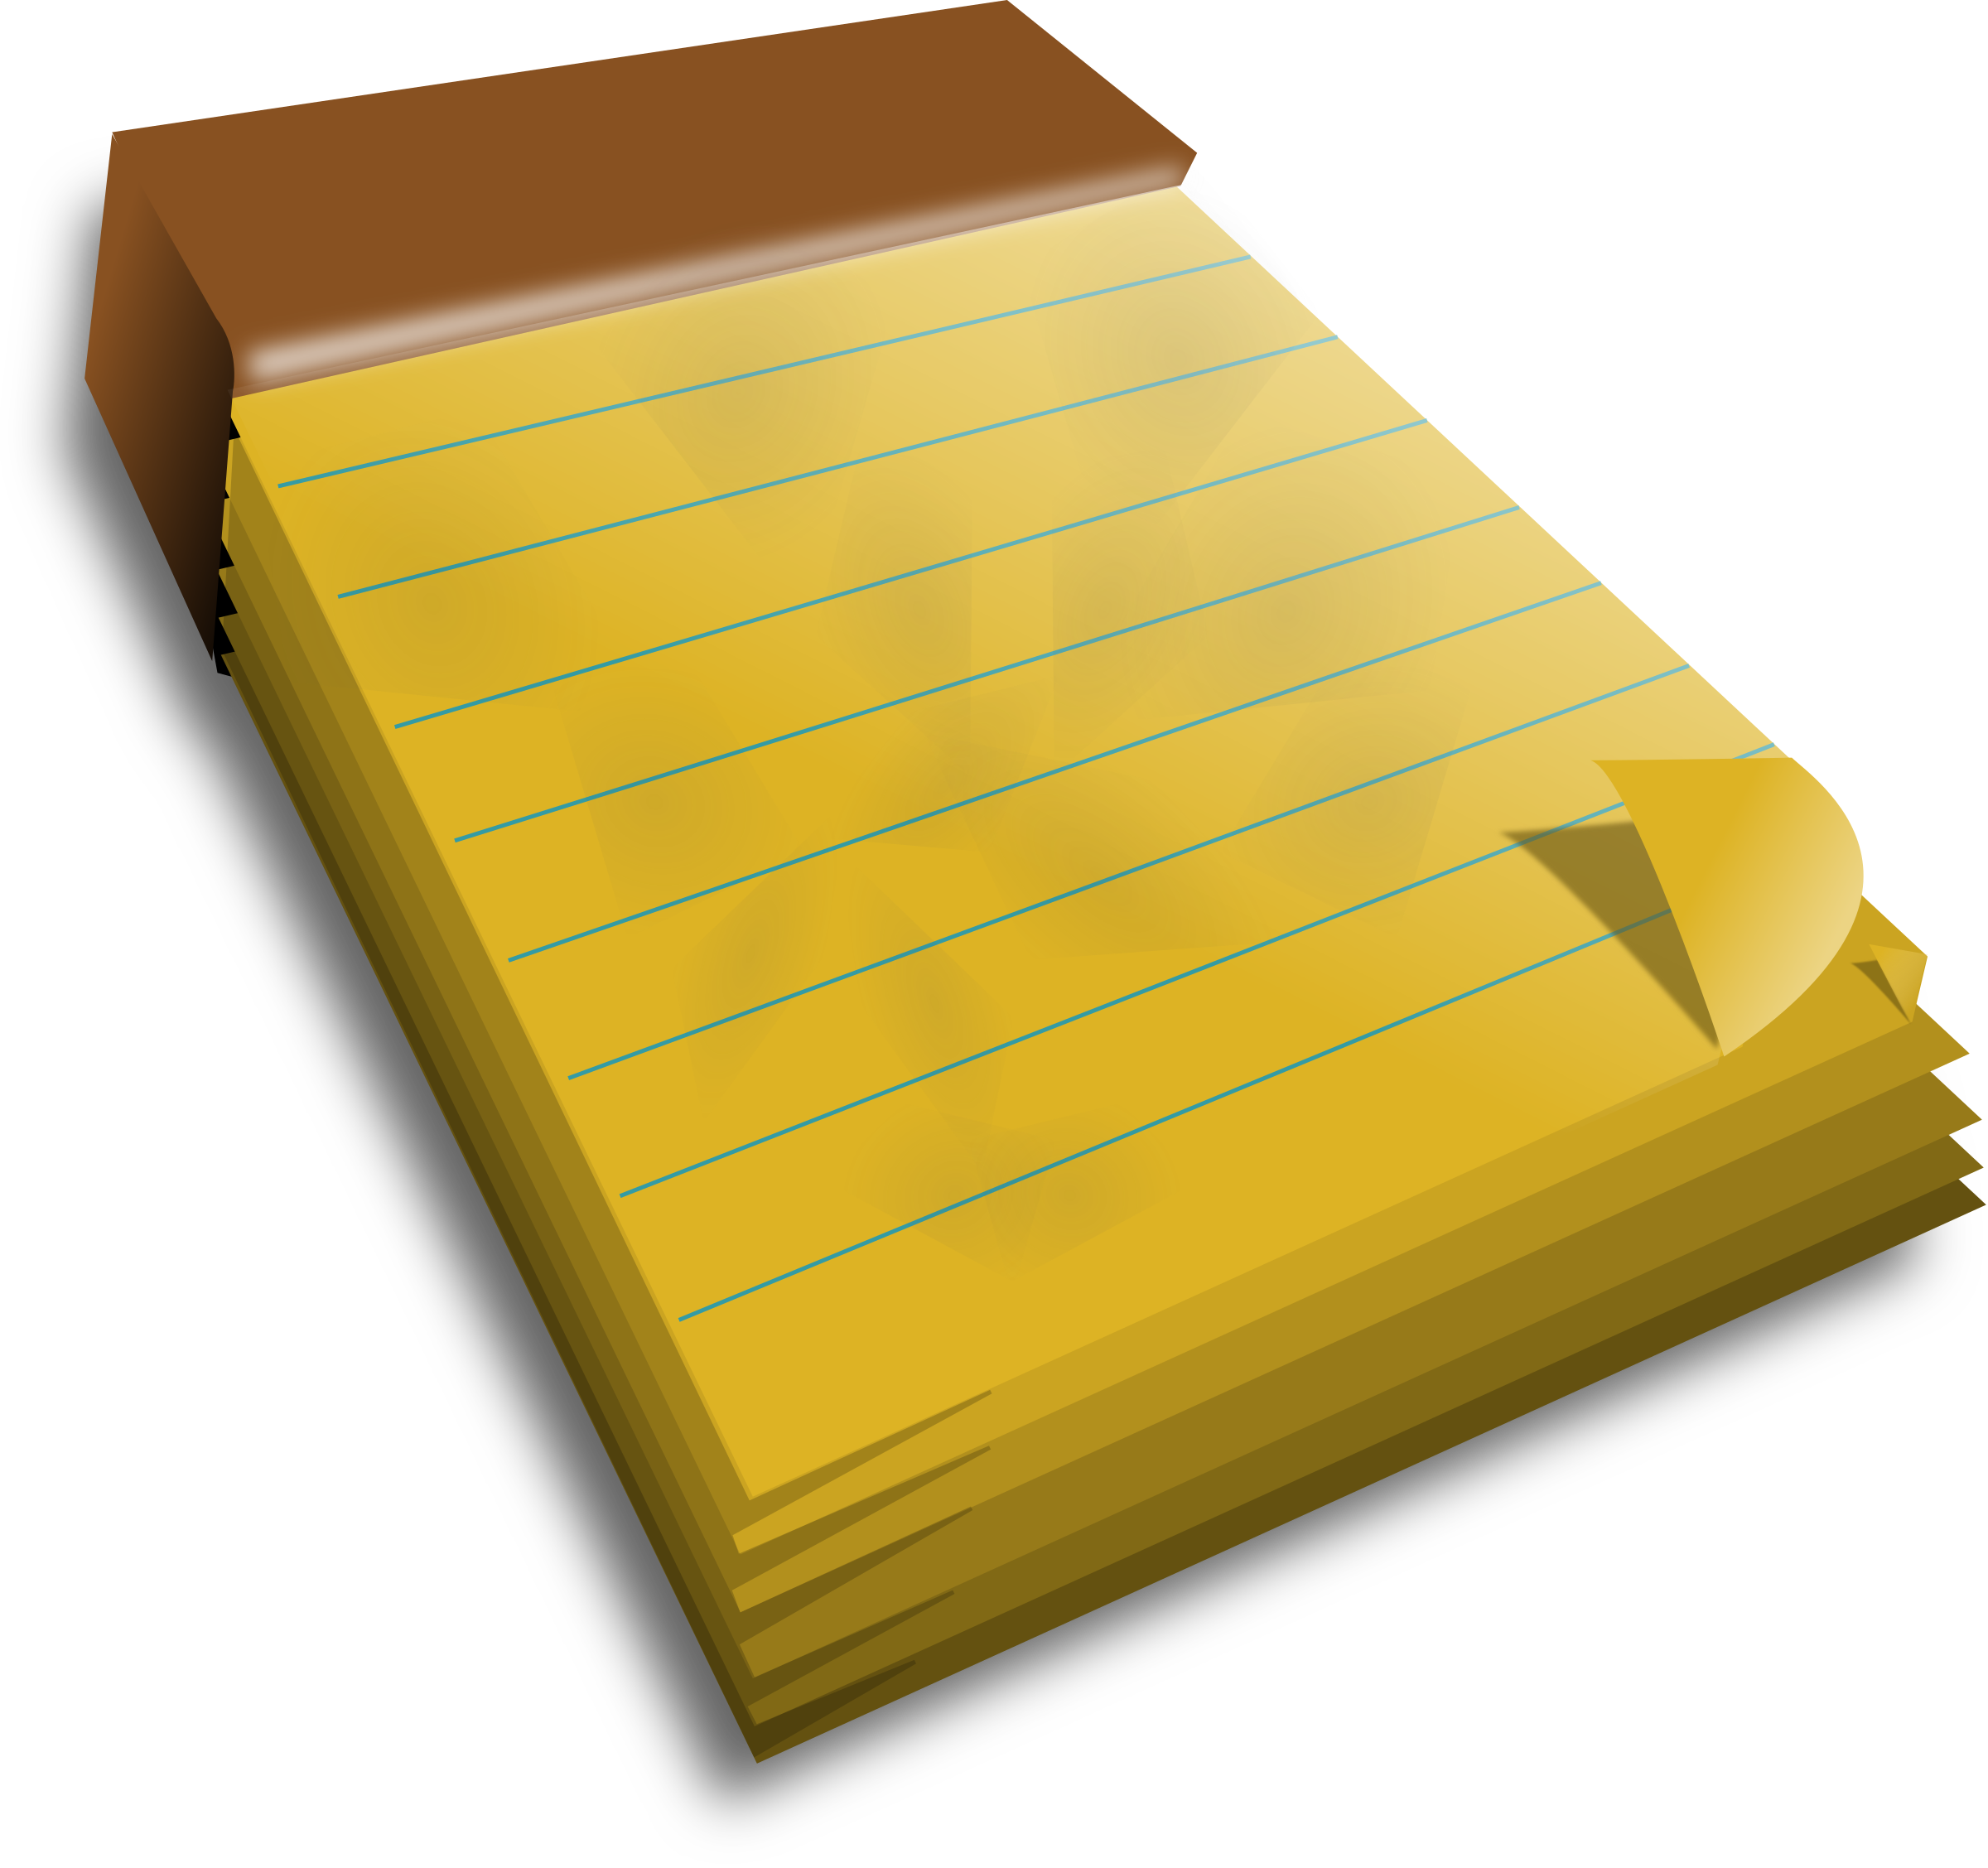 notebook clipart writer notebook